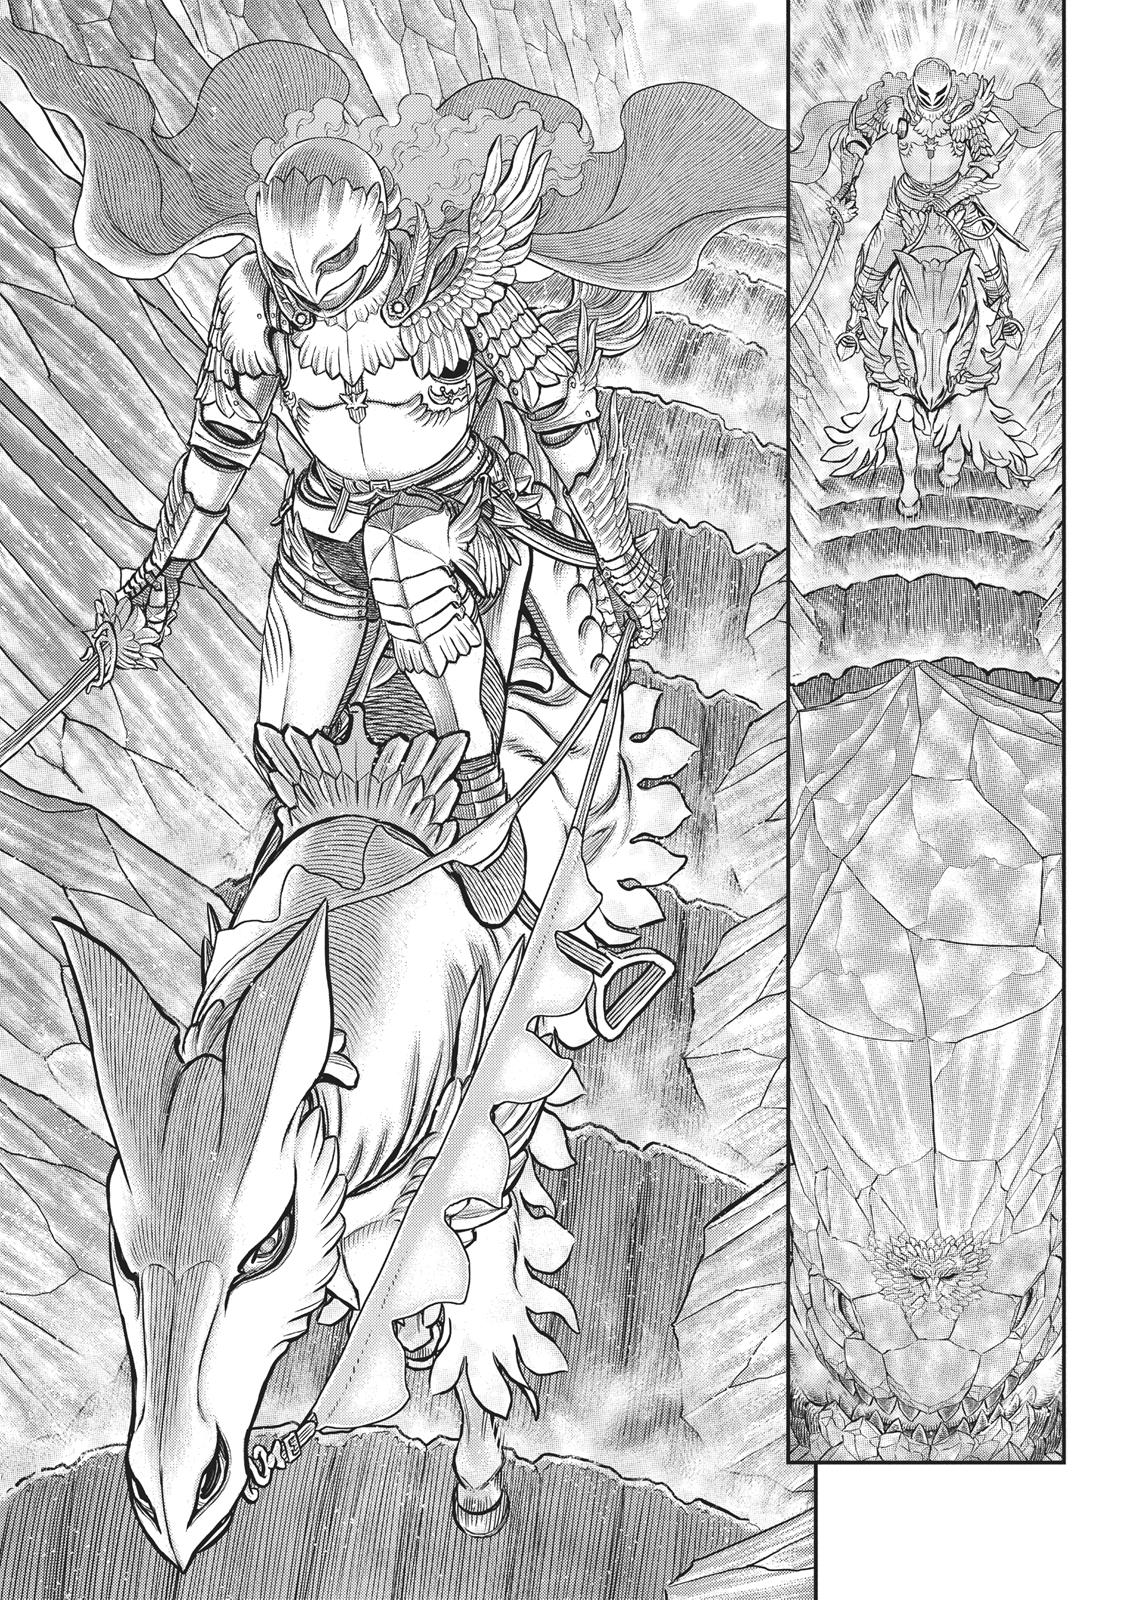 Berserk Manga Chapter 356 image 18